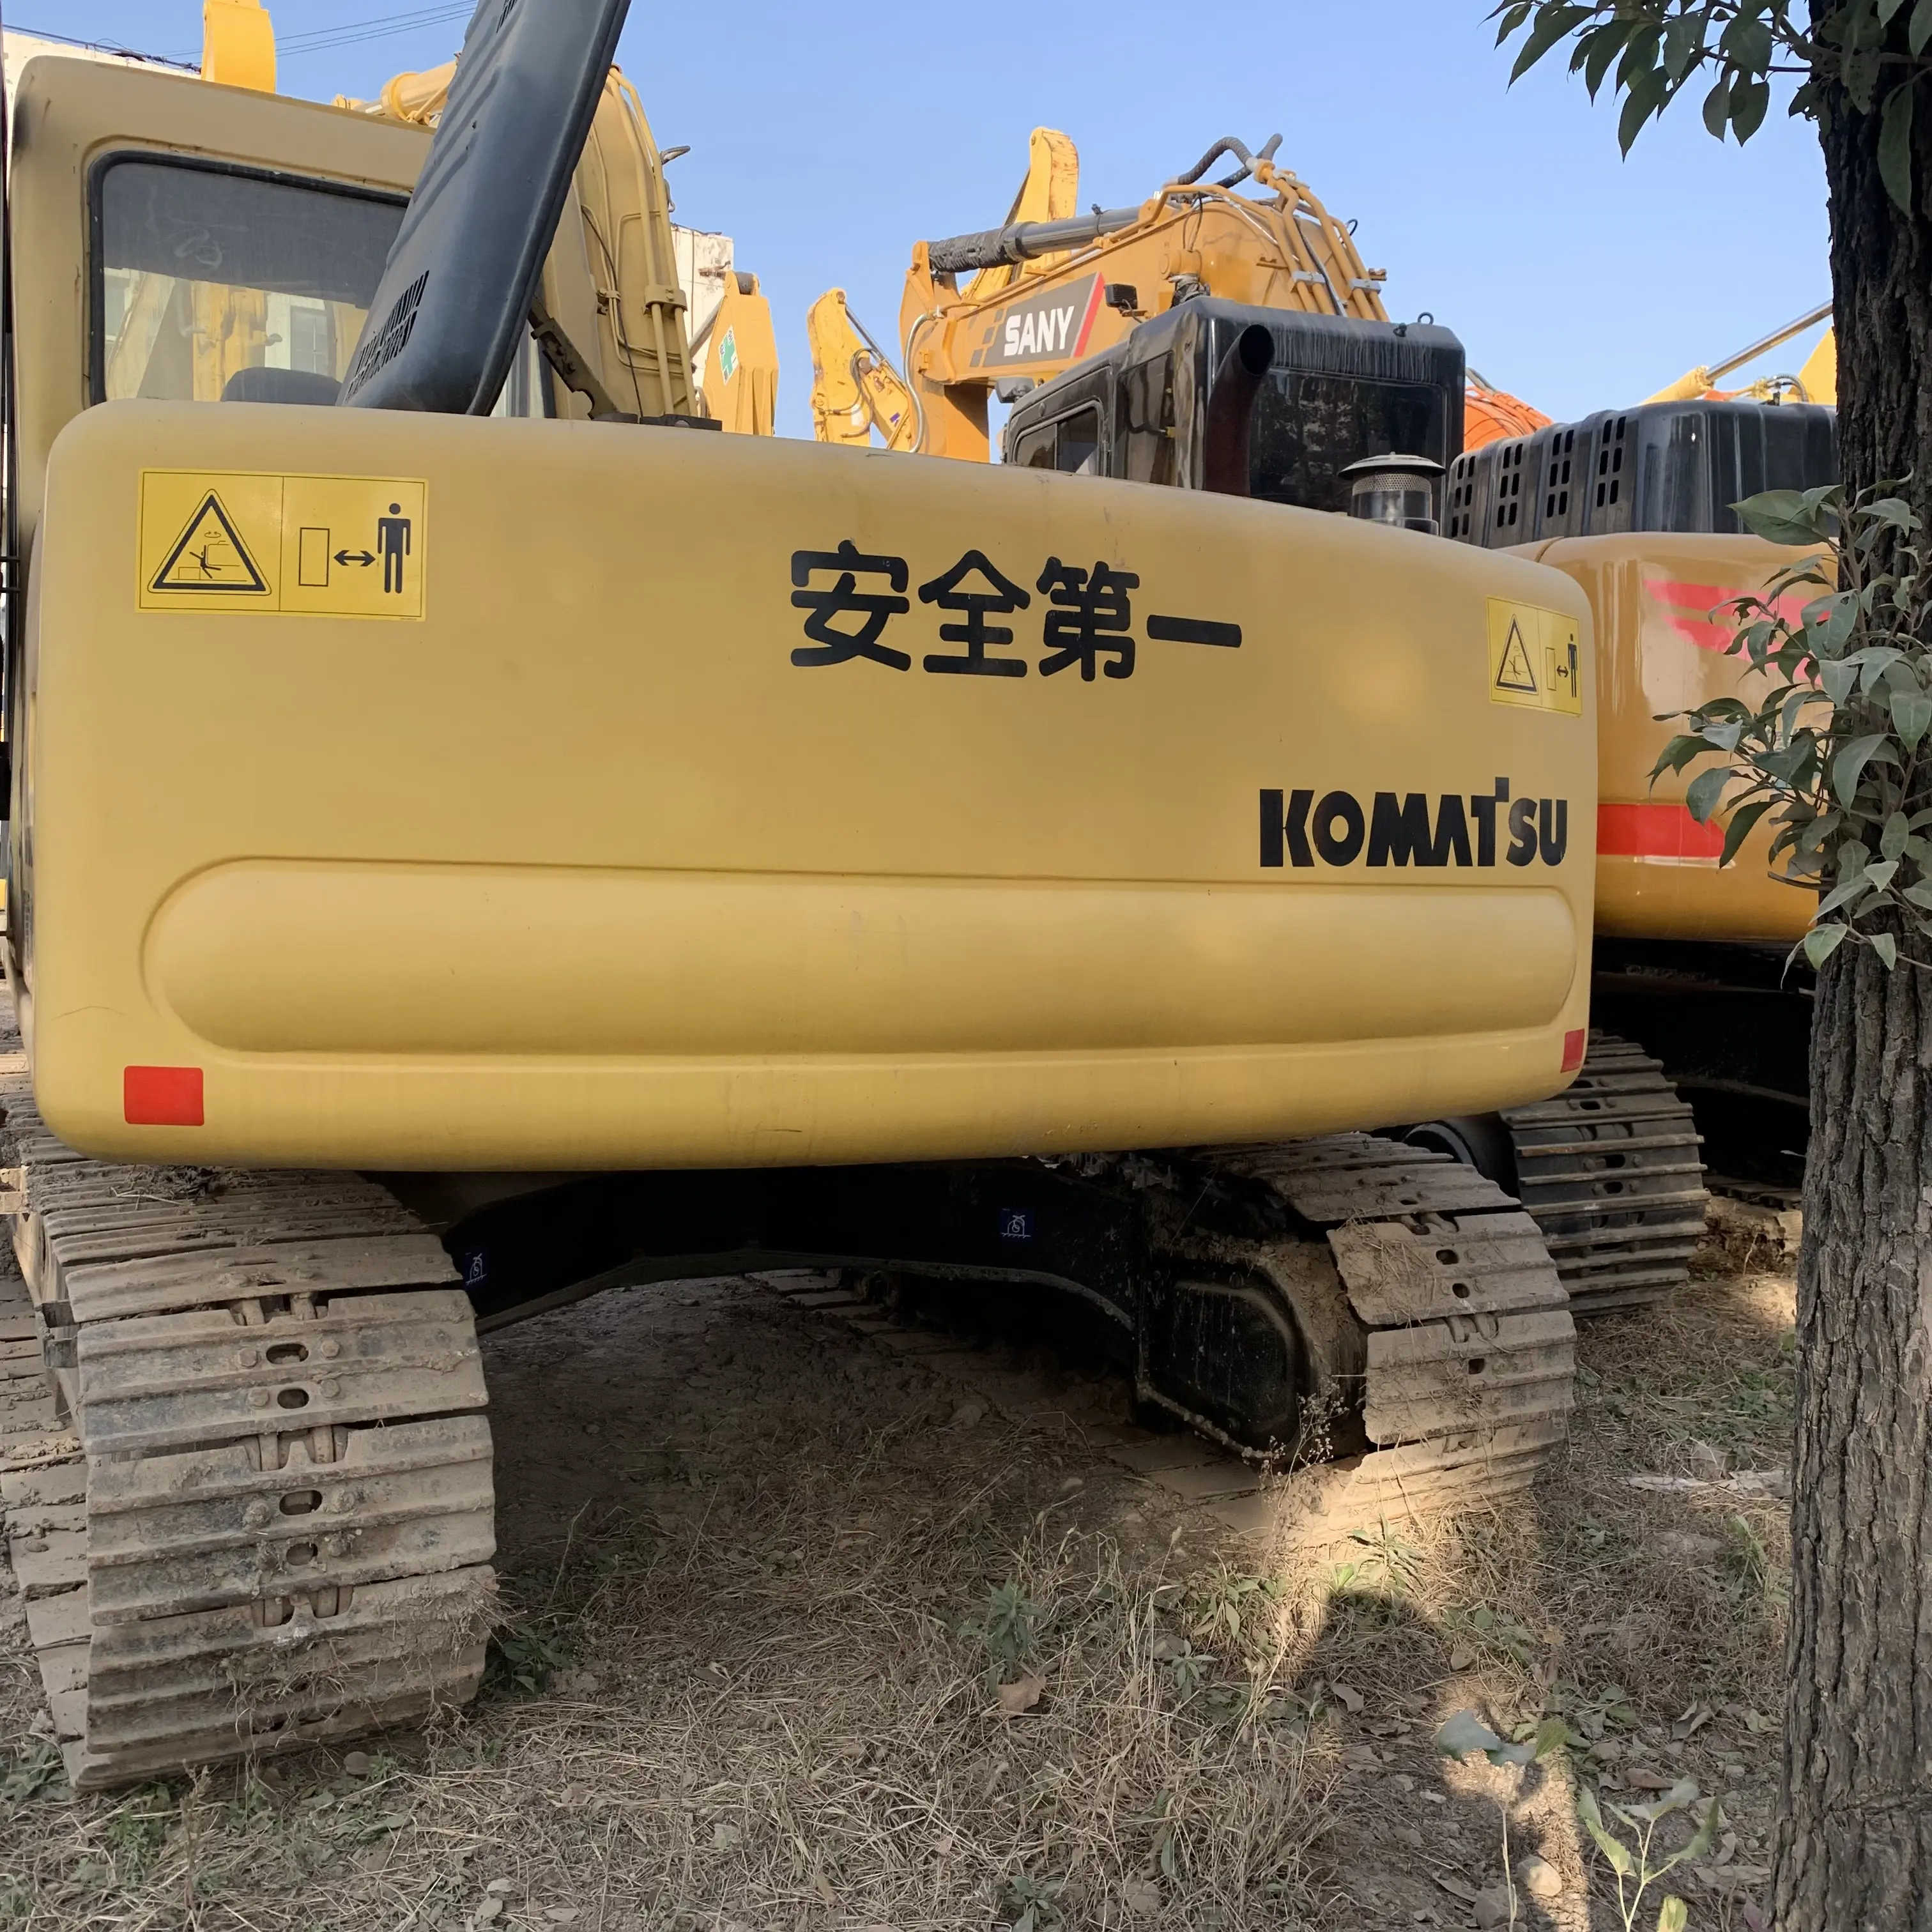 Escavatore PC120-6 Komatsu di alta qualità komatsu PC120 di alta qualità da 18 tonnellate utilizzato a basse ore di lavoro